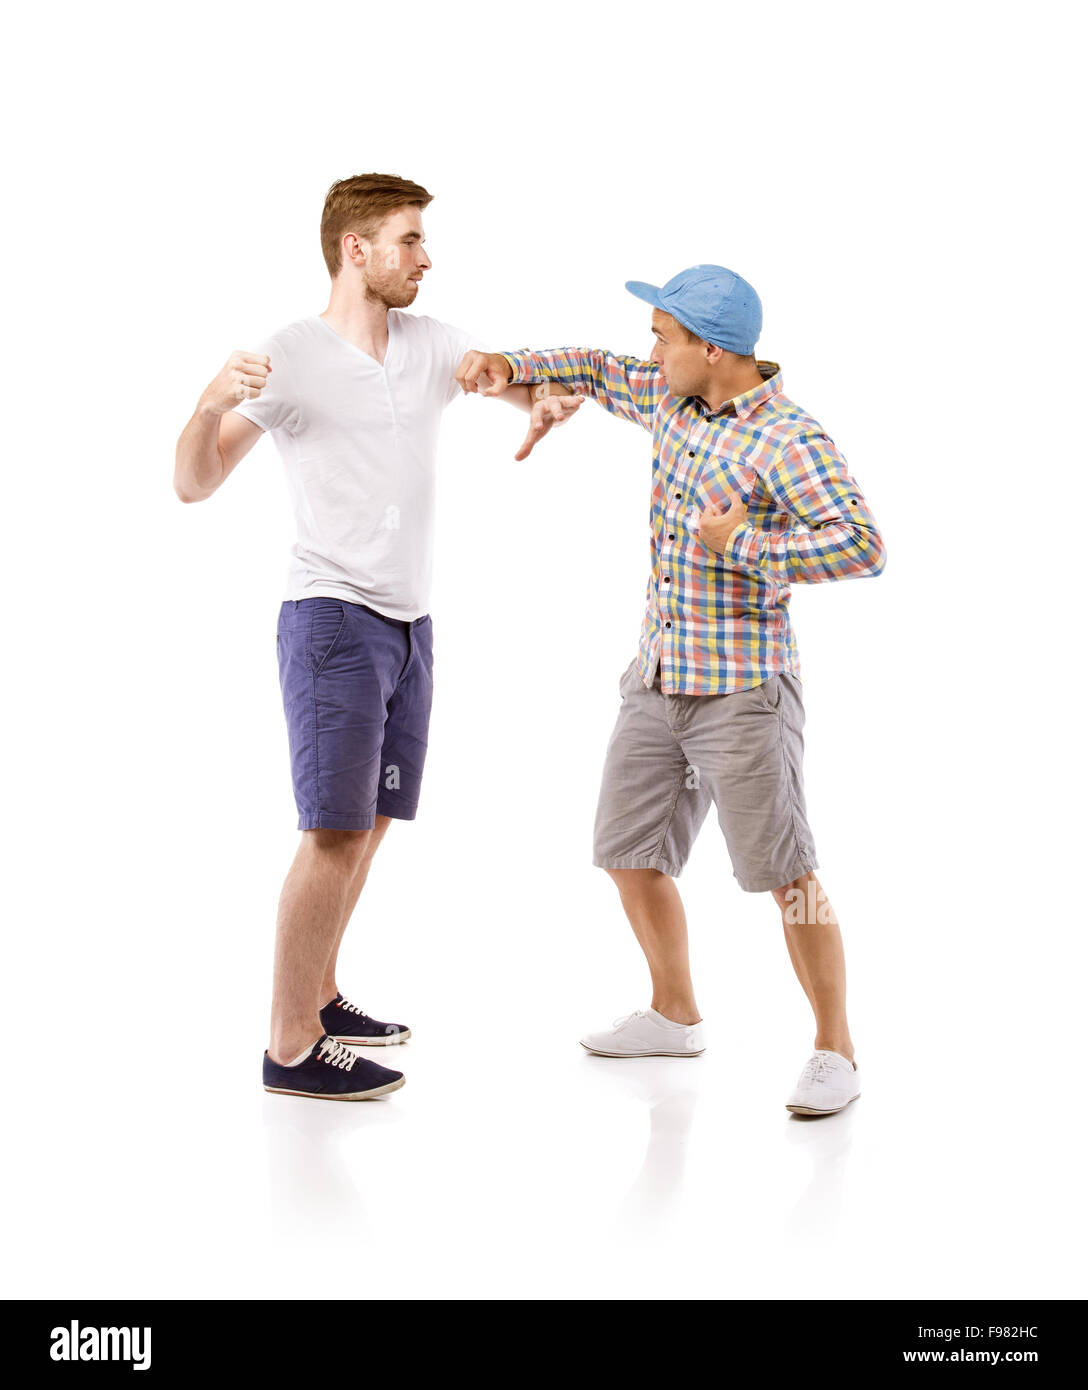 Junge Männer kämpfen, isolierten auf weißen Hintergrund Stockfoto